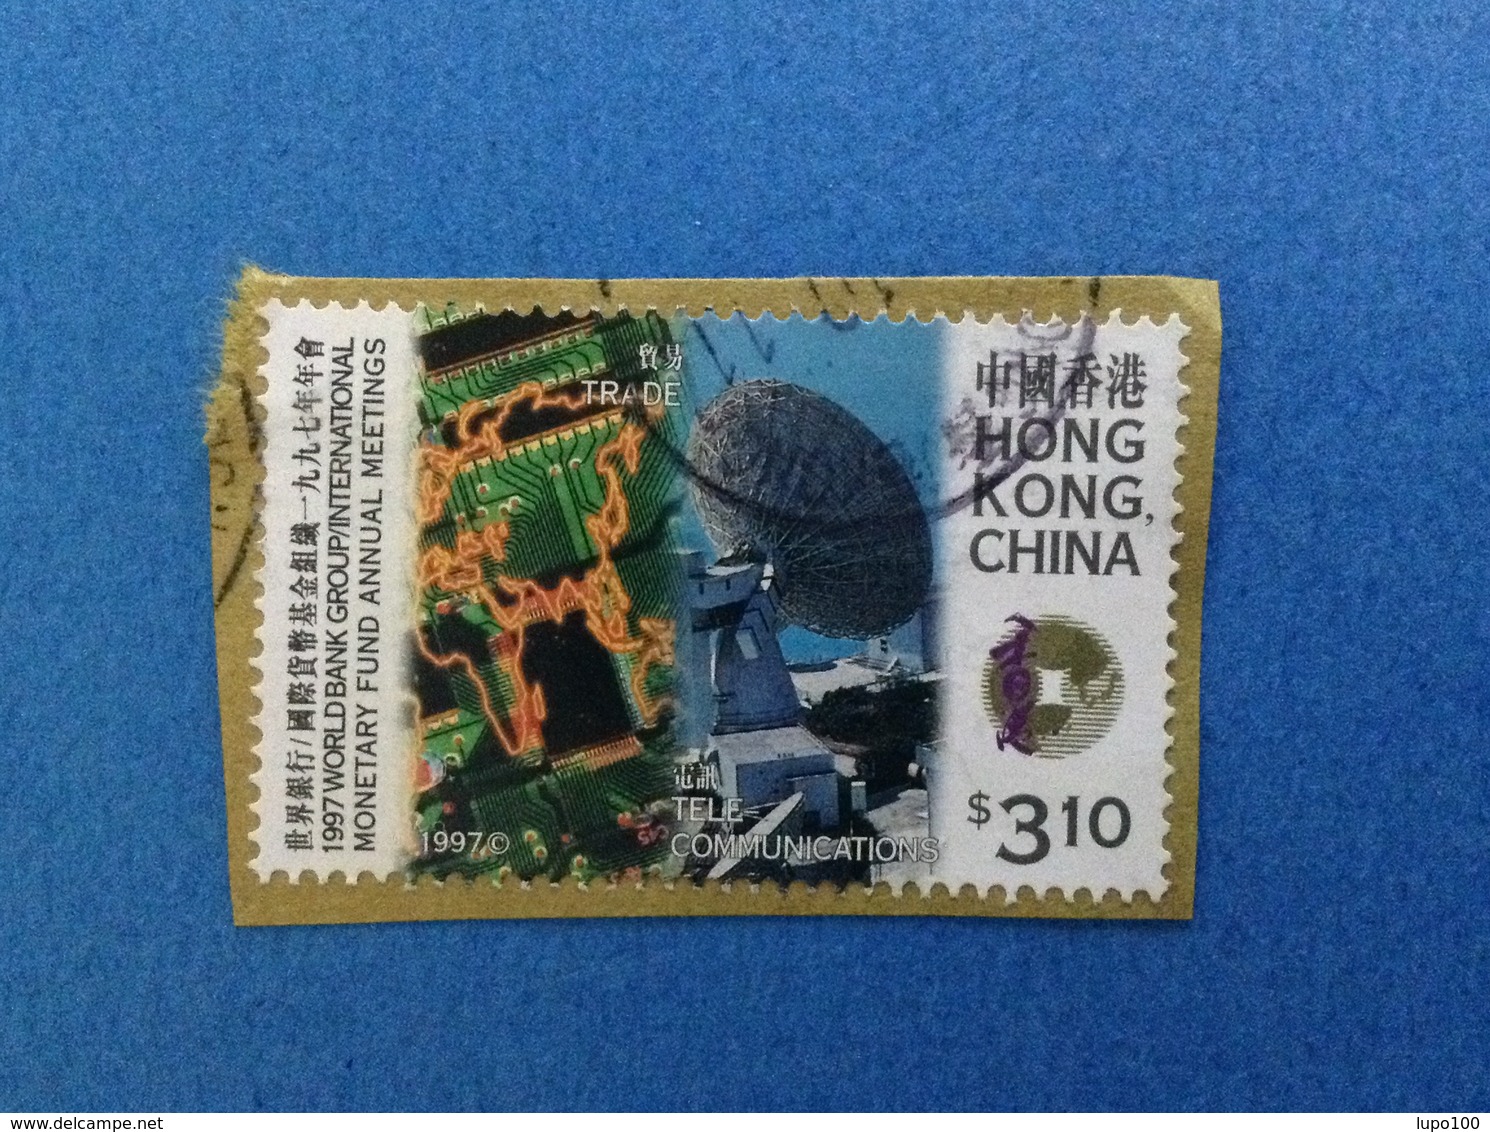 1997 HONG KONG CHINA FRANCOBOLLO USATO STAMP USED - TRADE TELECOMUNICATIONS $ 3.10 - Usati